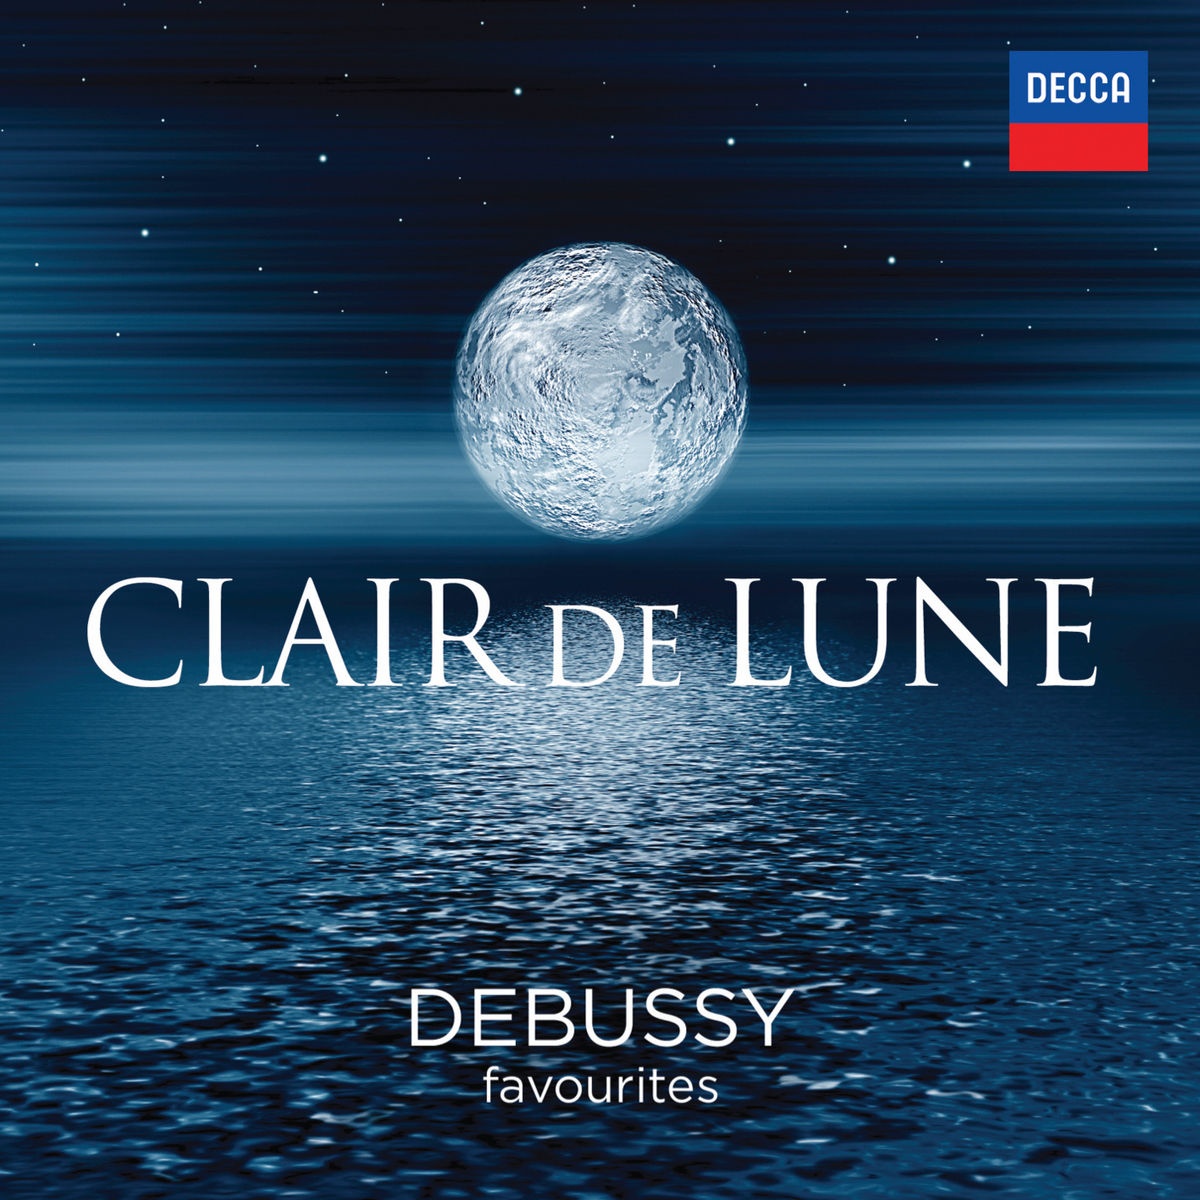 Debussy: La Mer, L.109 - 3. Dialogue Of The Wind And The Sea (Dialogue du vent et de la mer)